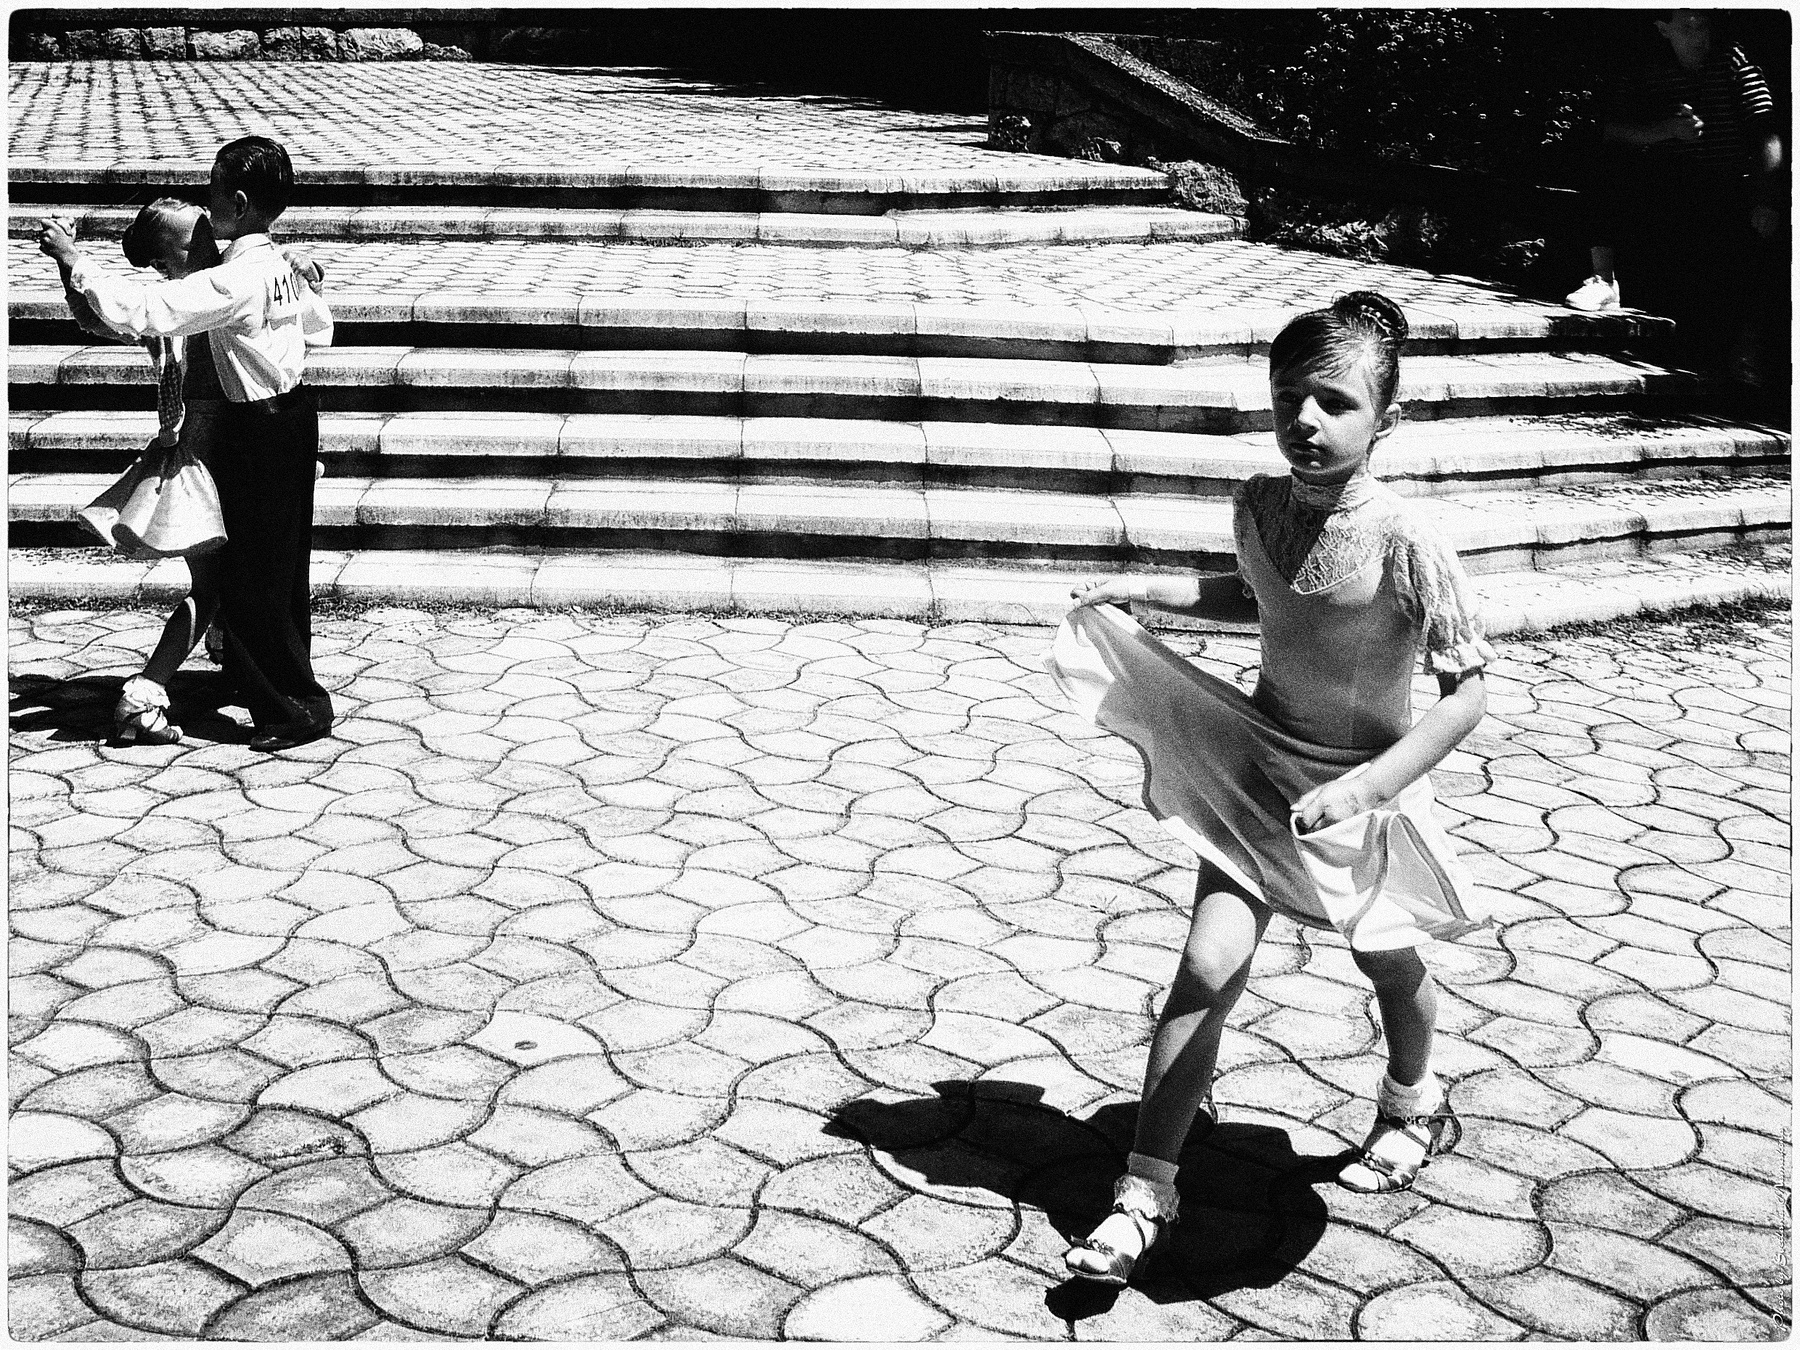 *Движение в размере на три четверти* фотография путешествие лето танец вальс дети жанр Фото.Сайт Светлана Мамакина Lihgra Adventure